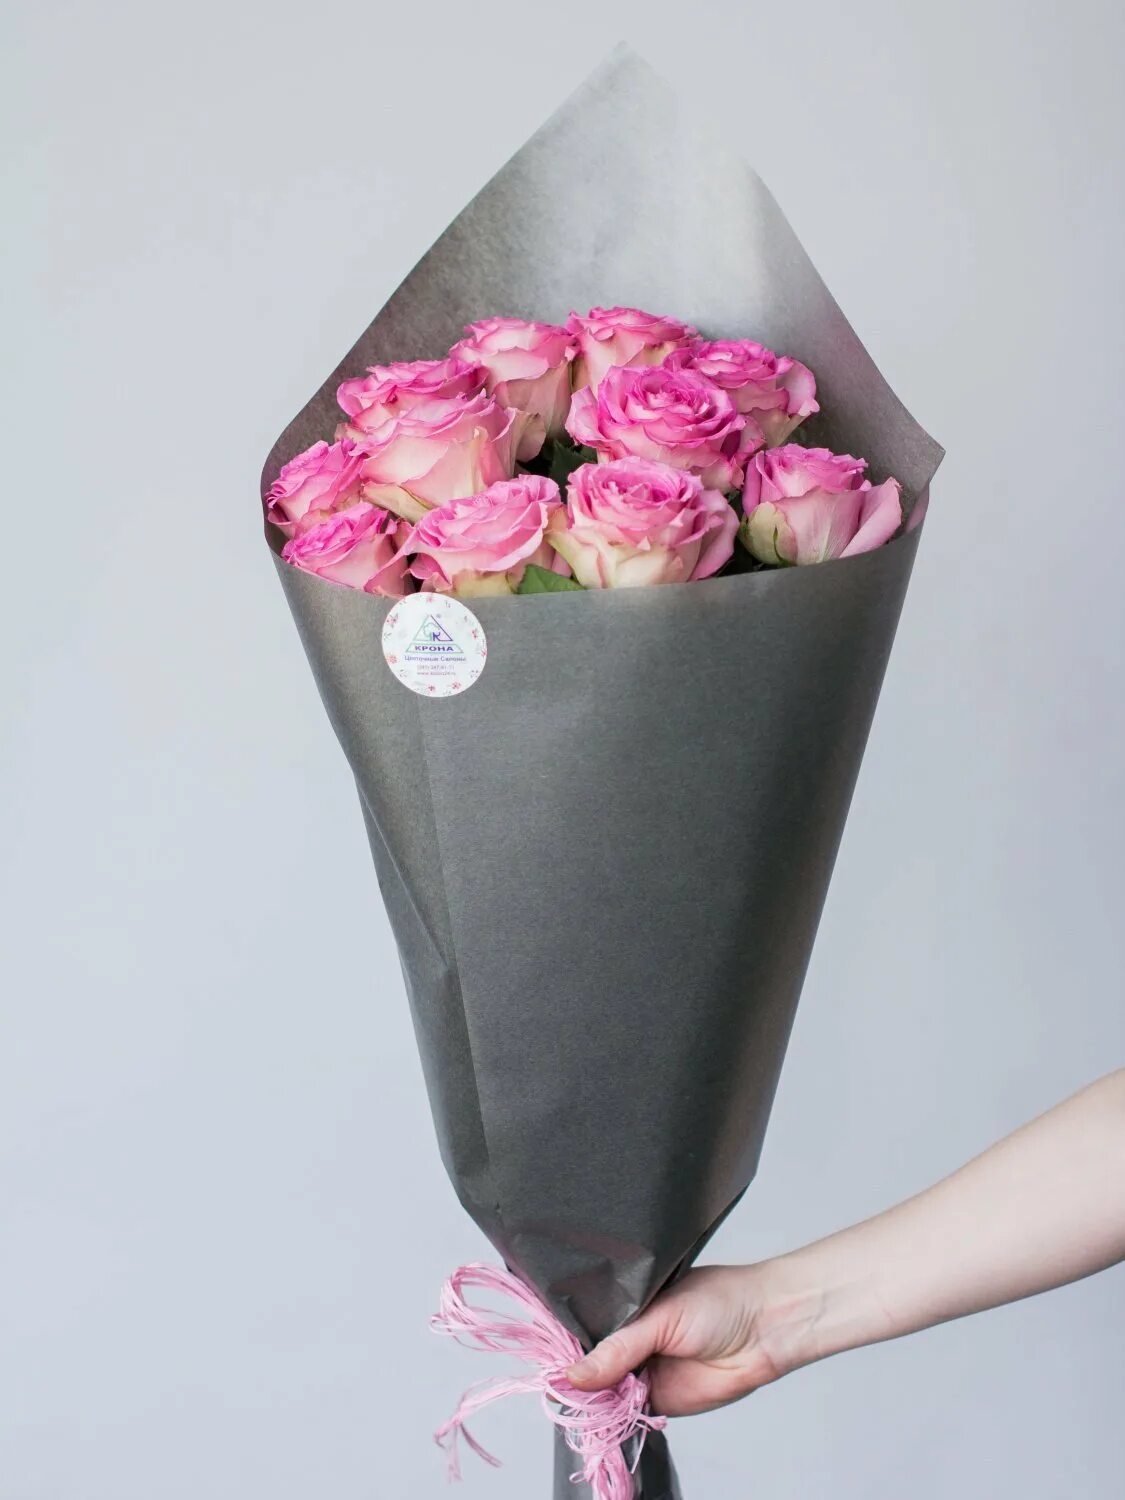 Во что упаковывают цветы. Упаковка для цветов. Упаковка цветовв бумагу. Упаковка роз в бумагу. Красивая упаковка для цветов.